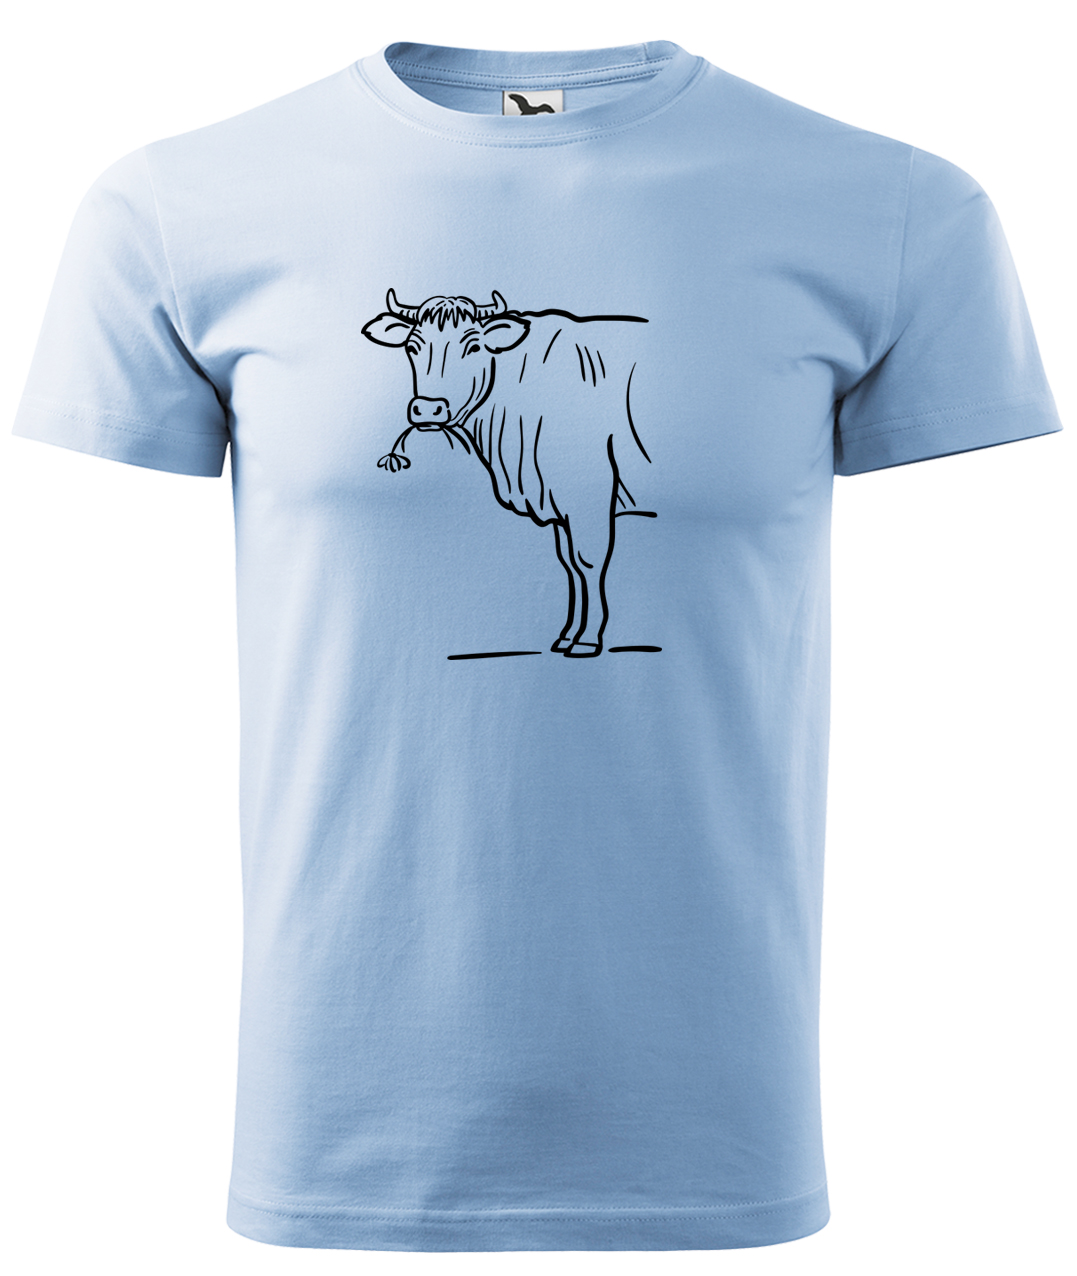 Dětské tričko s krávou - Býk Velikost: 4 roky / 110 cm, Barva: Nebesky modrá (15), Délka rukávu: Krátký rukáv